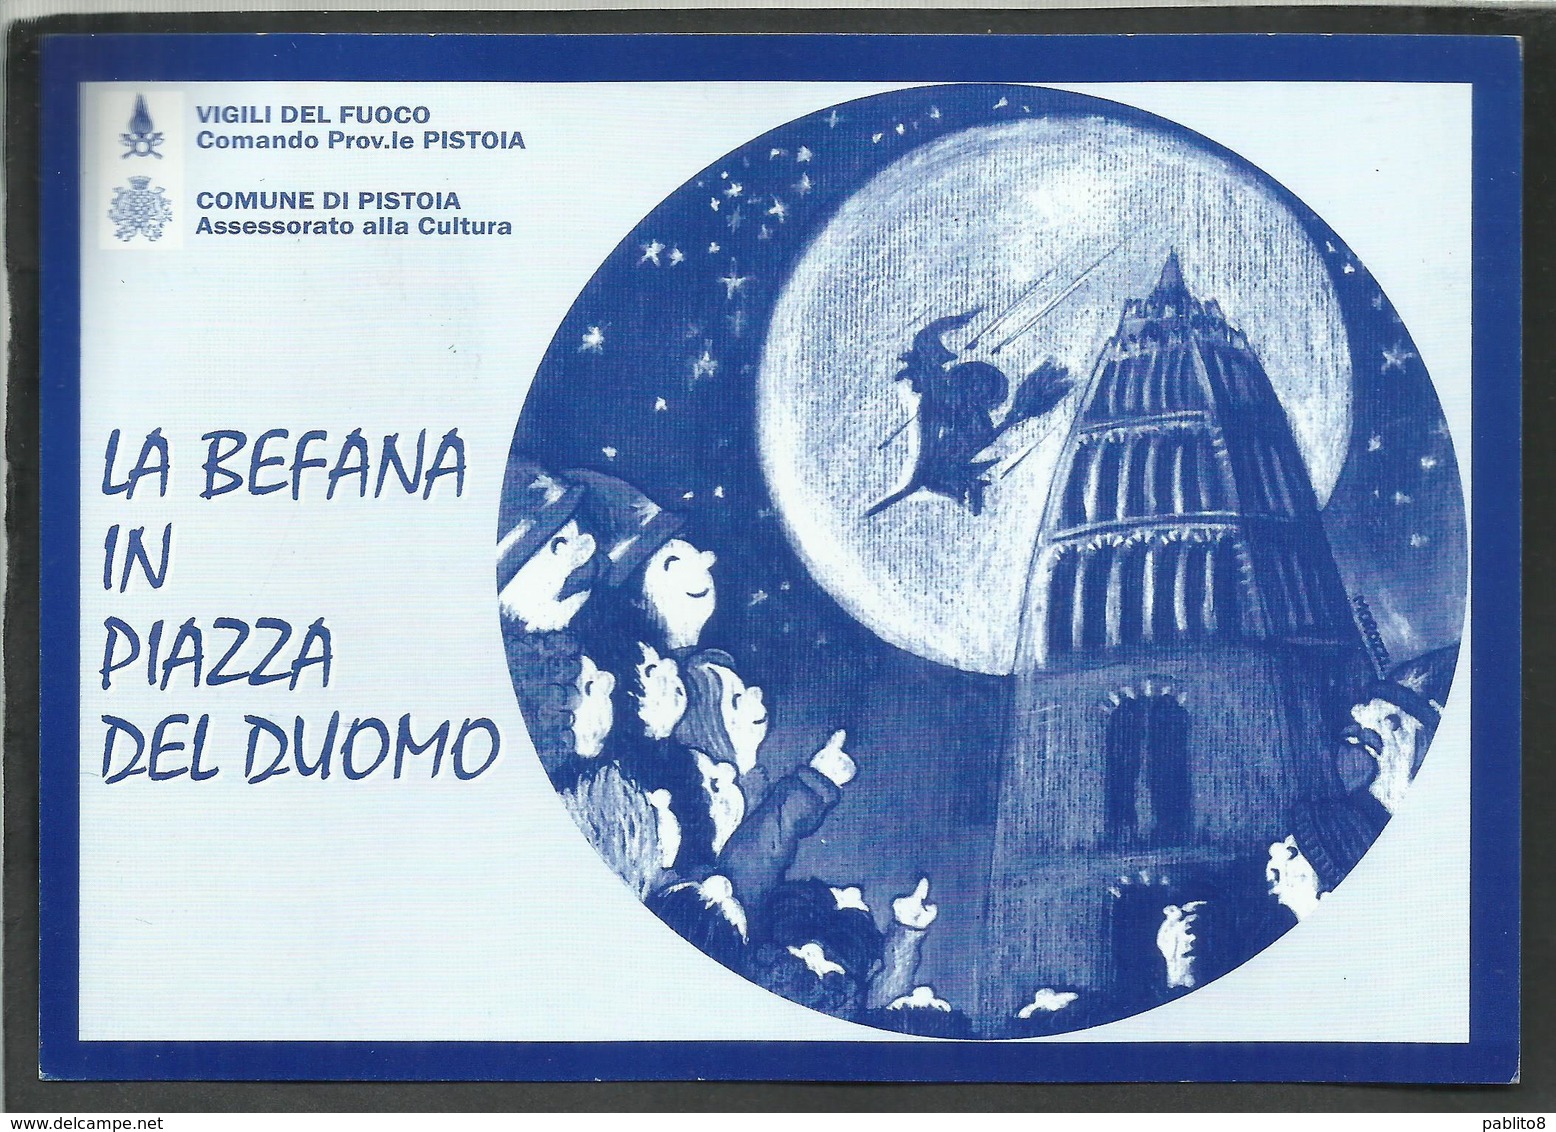 ITALIA REPUBBLICA ITALY REPUBLIC 7 1 2001 UNICEF LA BEFANA IN PIAZZA DEL DUOMO PISTOIA VIGILI DEL FUOCO CARTOLINA CARD - Manifestazioni